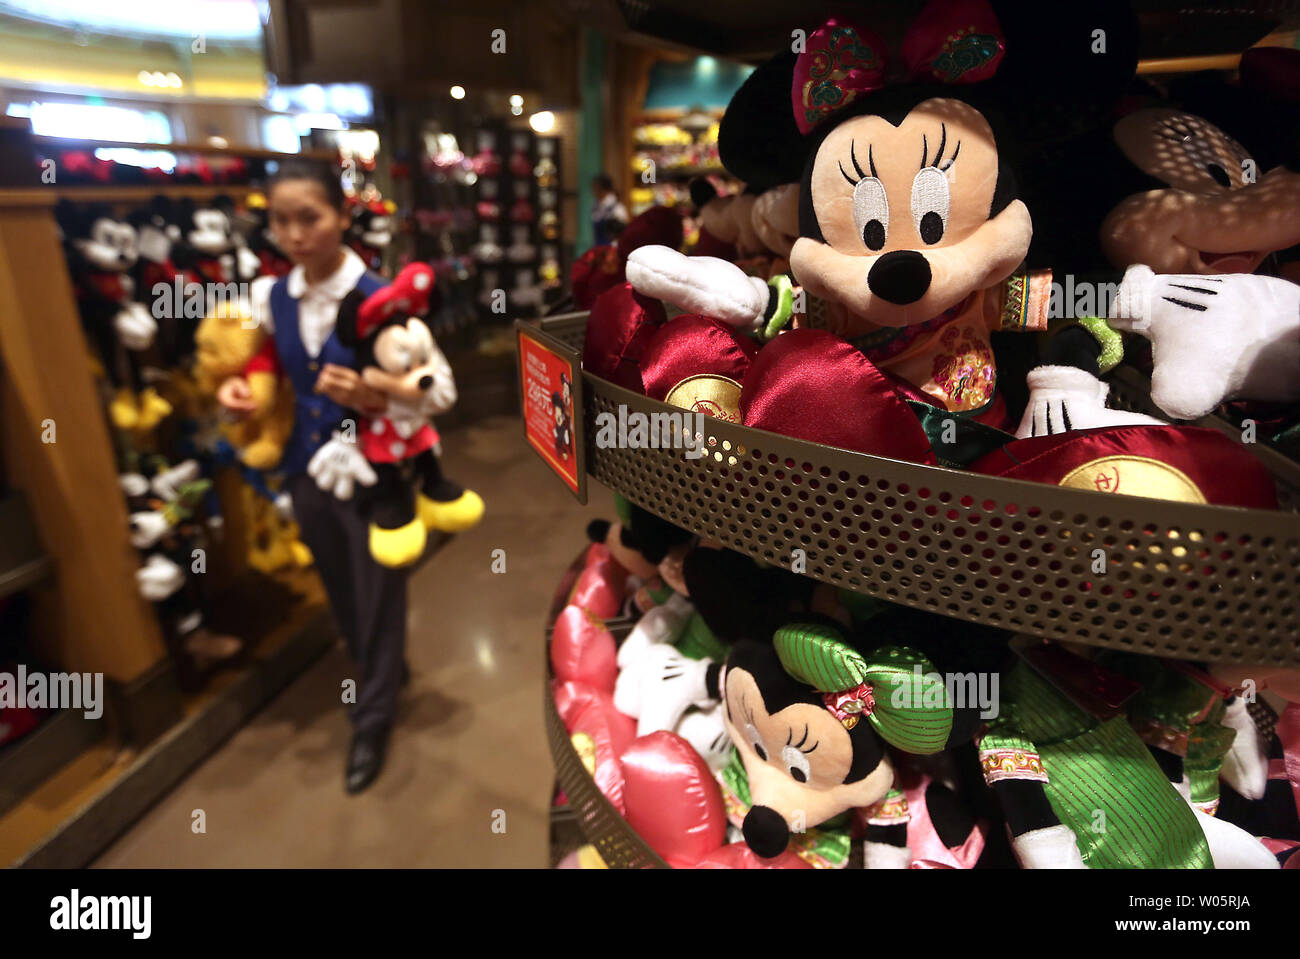 Eine chinesische Verkäuferin stocks Puppen Disney's berühmten Zeichen an einem Souvenirshop in Shanghai Disney Resort am 14. August 2017. Shanghai Disneyland ist der größte ausländische Investitionen und strebt in China rasant wachsenden Mittelschicht - ein Schlüssel für die Zukunft des Unternehmens, nach Disney. Foto von Stephen Rasierer/UPI Stockfoto